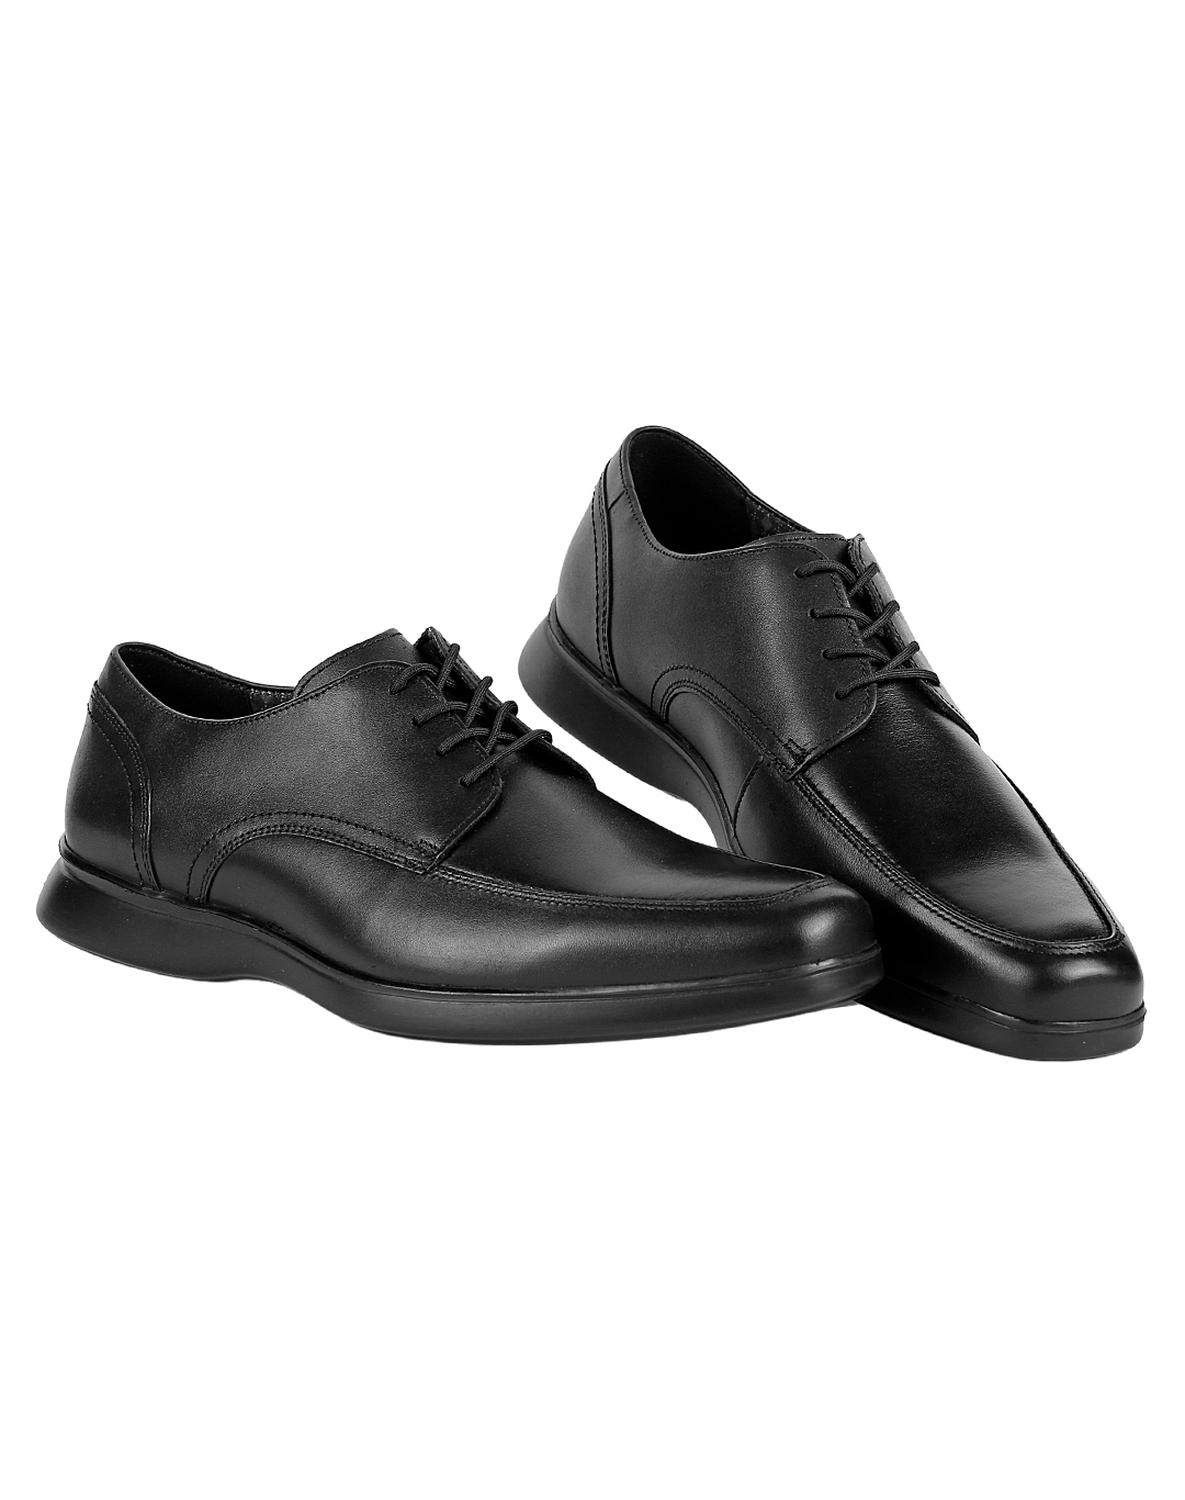 Zapato Vestir Oxford Hombre Negro Piel Flexi 02503826 – SALVAJE TENTACIÓN